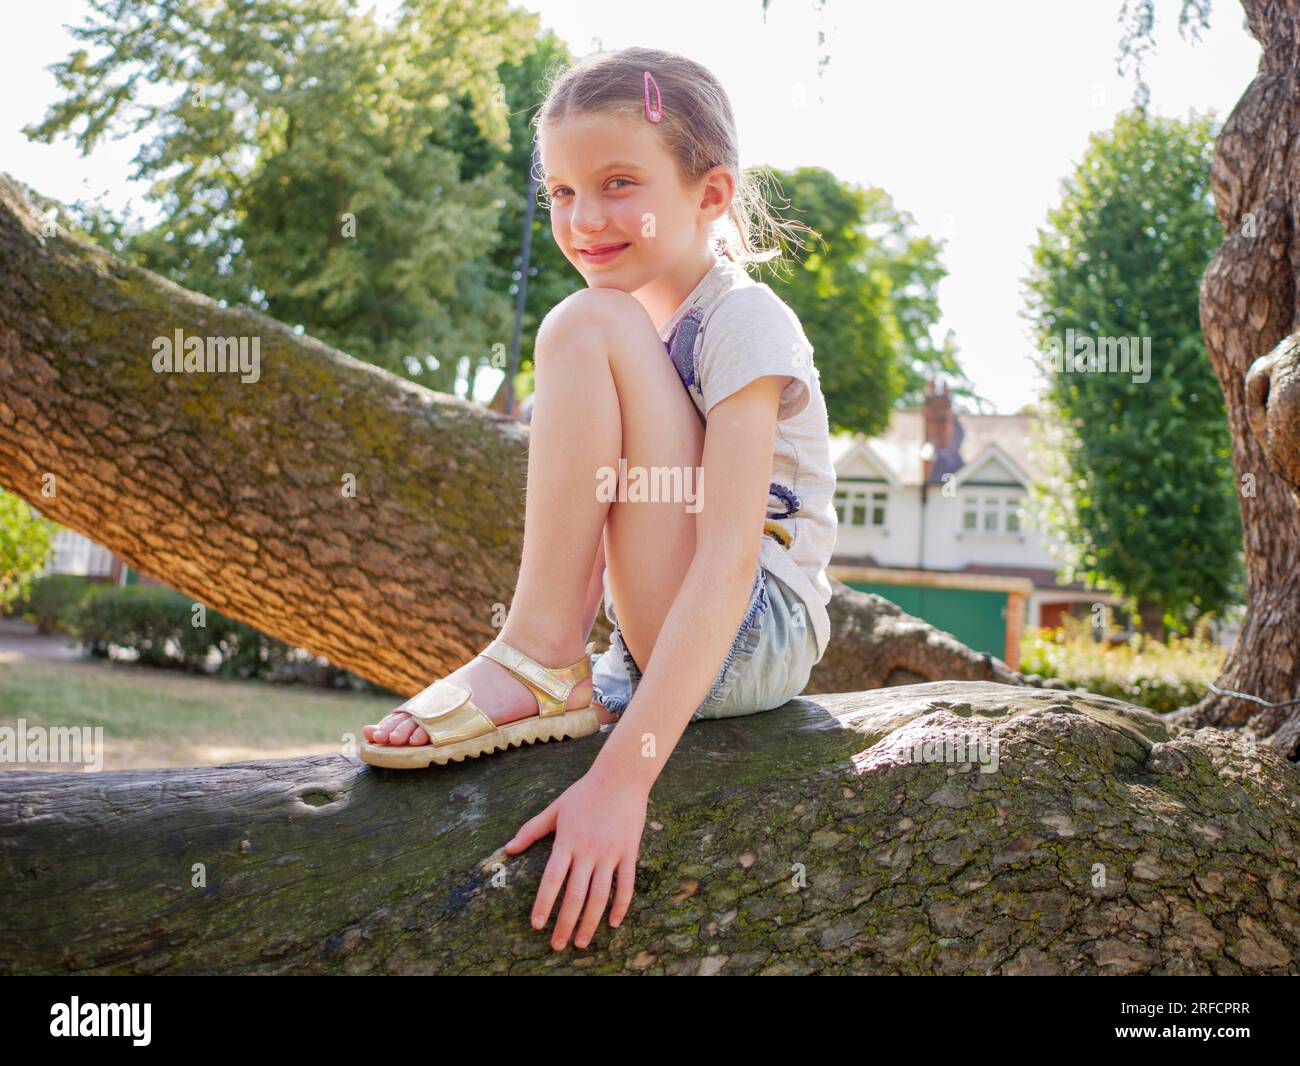 Porträt eines glücklichen jungen achtjährigen Mädchens, das auf einem Baumzweig im Park sitzt, England, Großbritannien Stockfoto